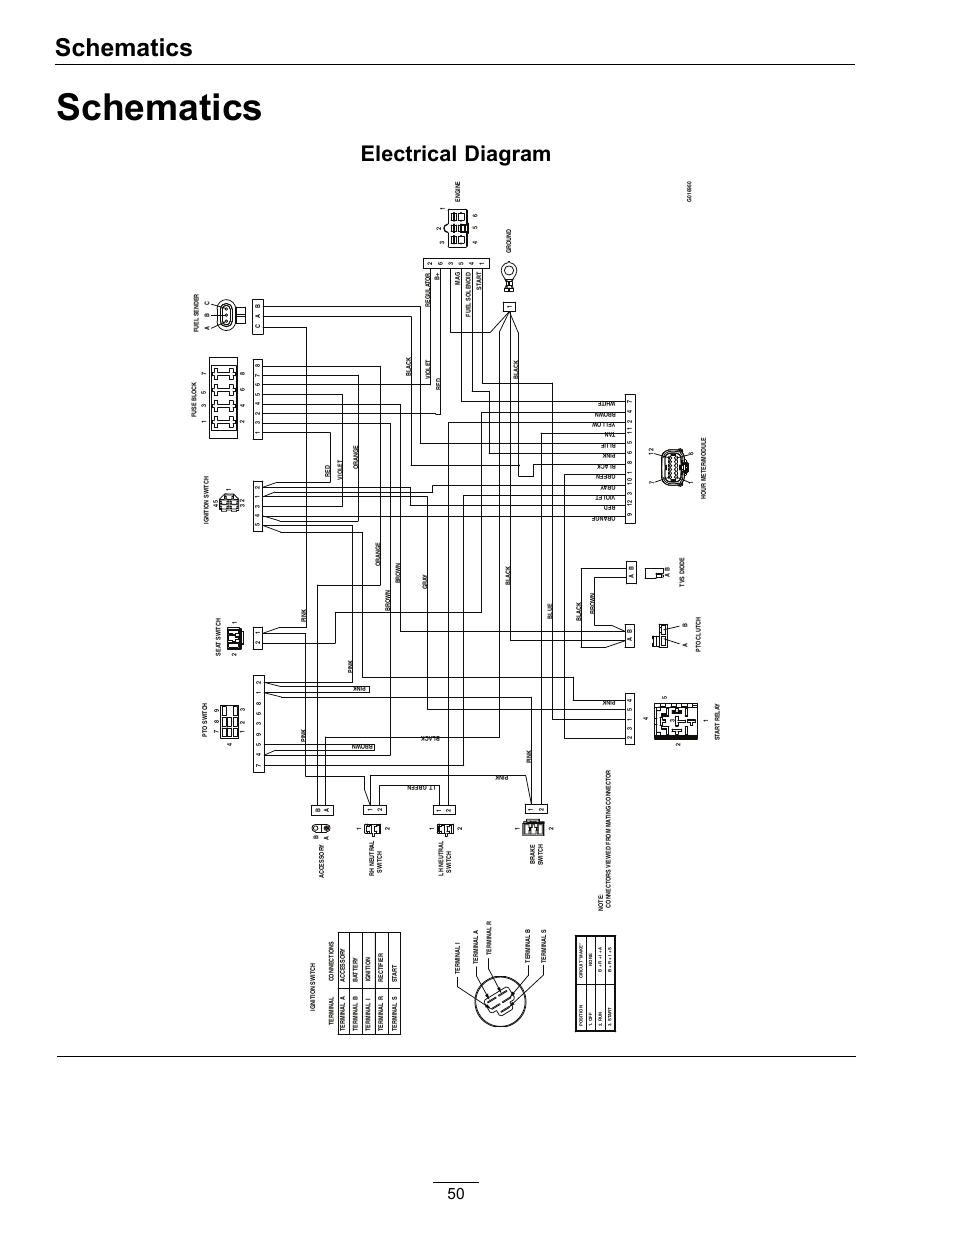 suzuki rmx 250 wiring diagram